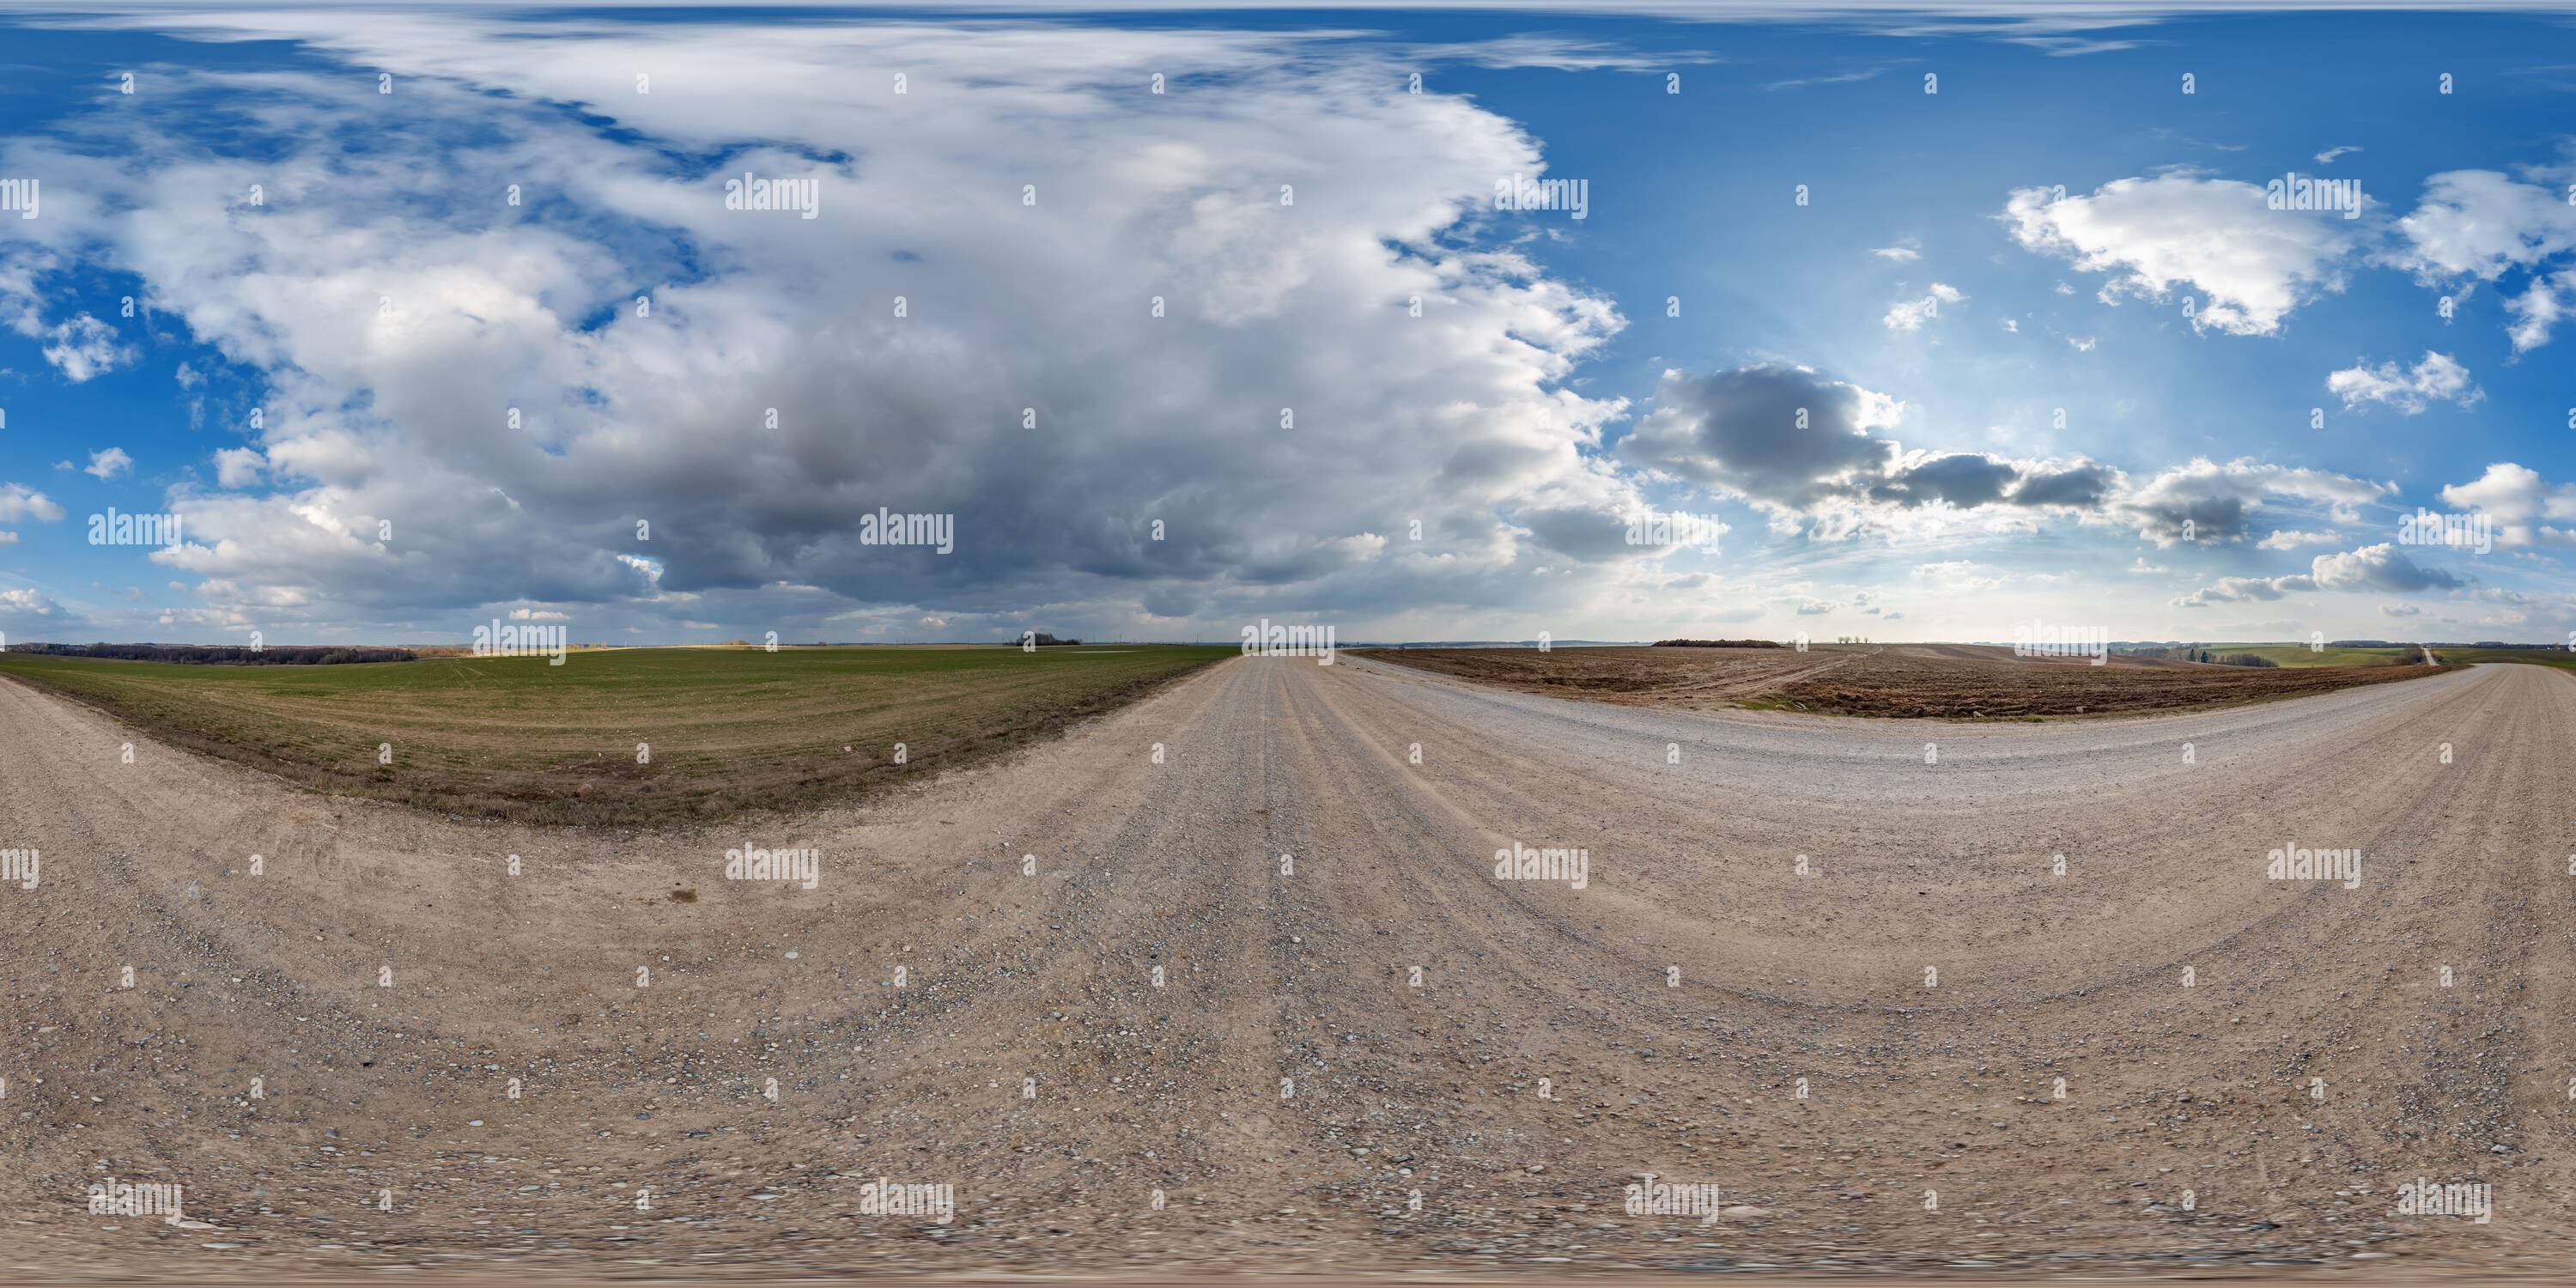 Vue panoramique à 360° de hdri 360 panorama sur la route de gravier parmi les champs dans la soirée de printemps avec des nuages impressionnants en projection sphérique sans soudure équirectangulaire, pour VR AR v